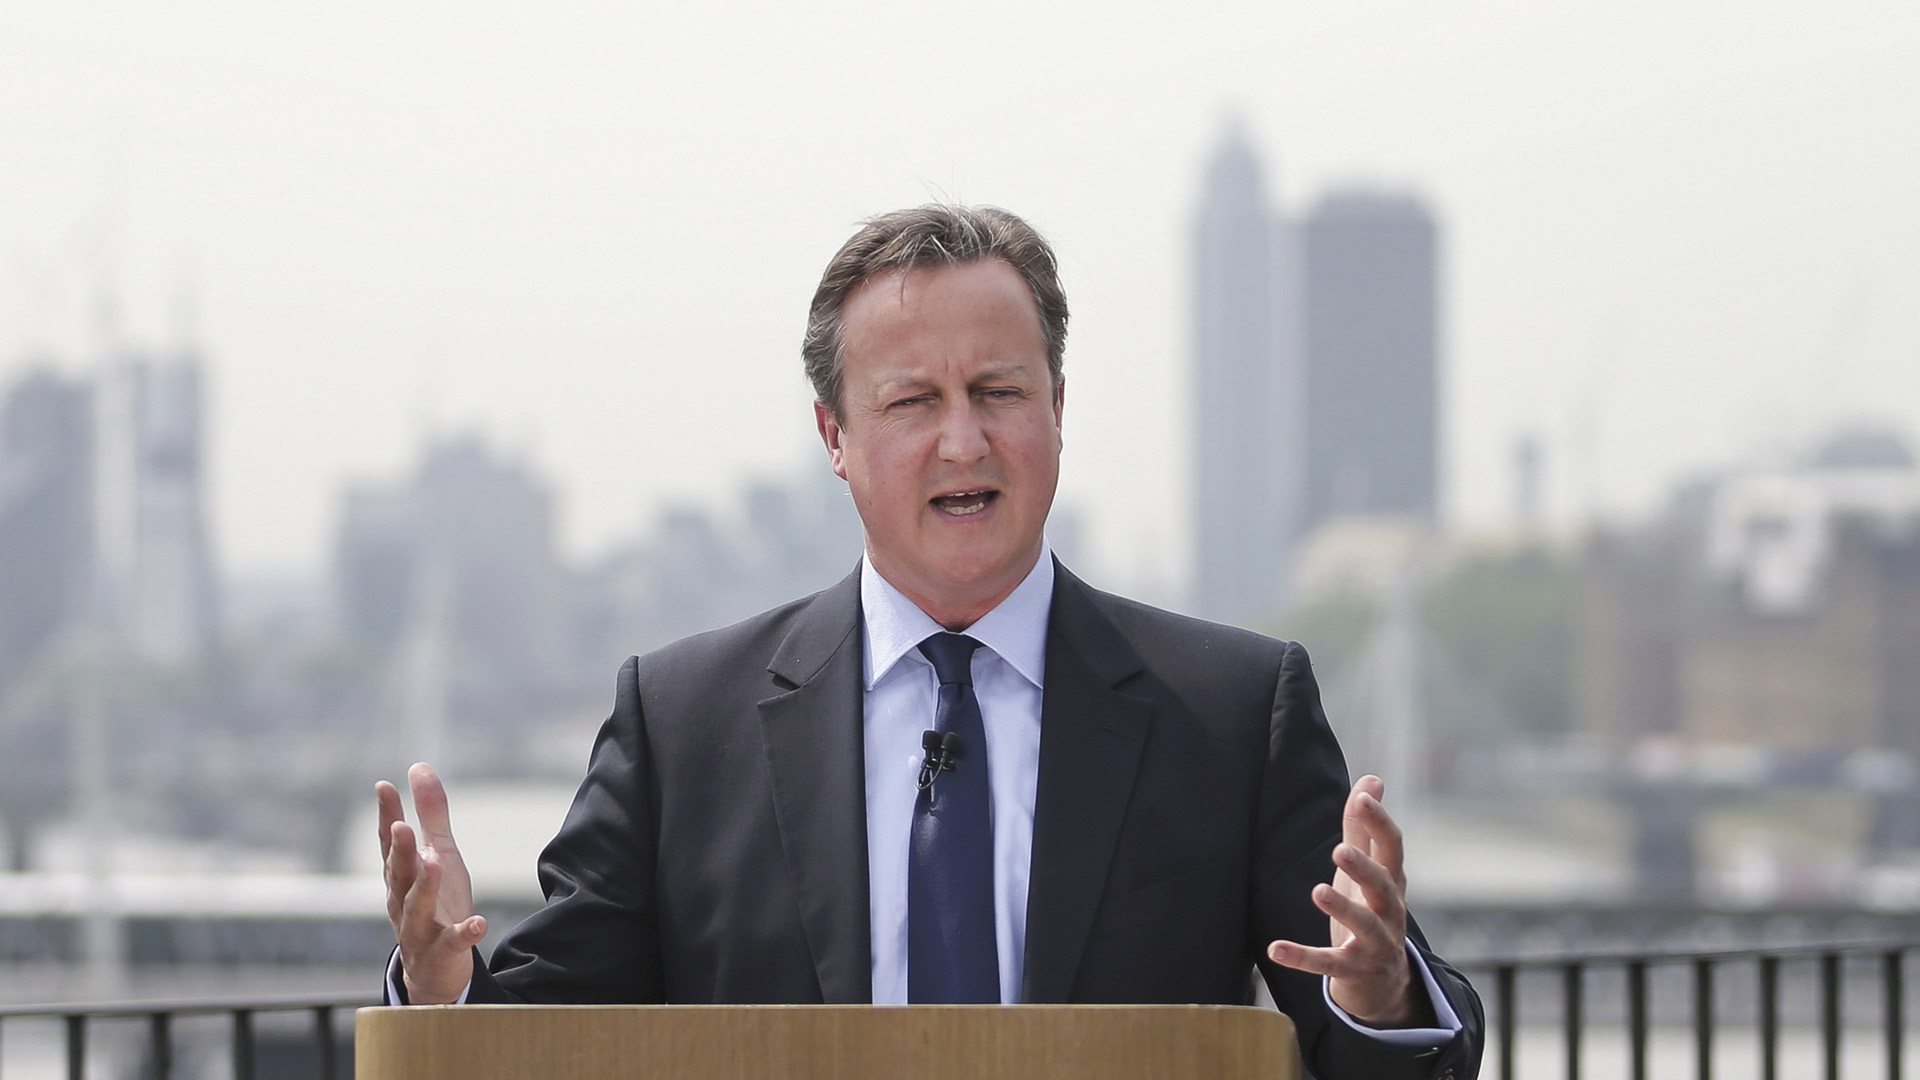 El primer ministro pidió votar a favor de la permanencia de Reino Unido en el bloque de 28 países